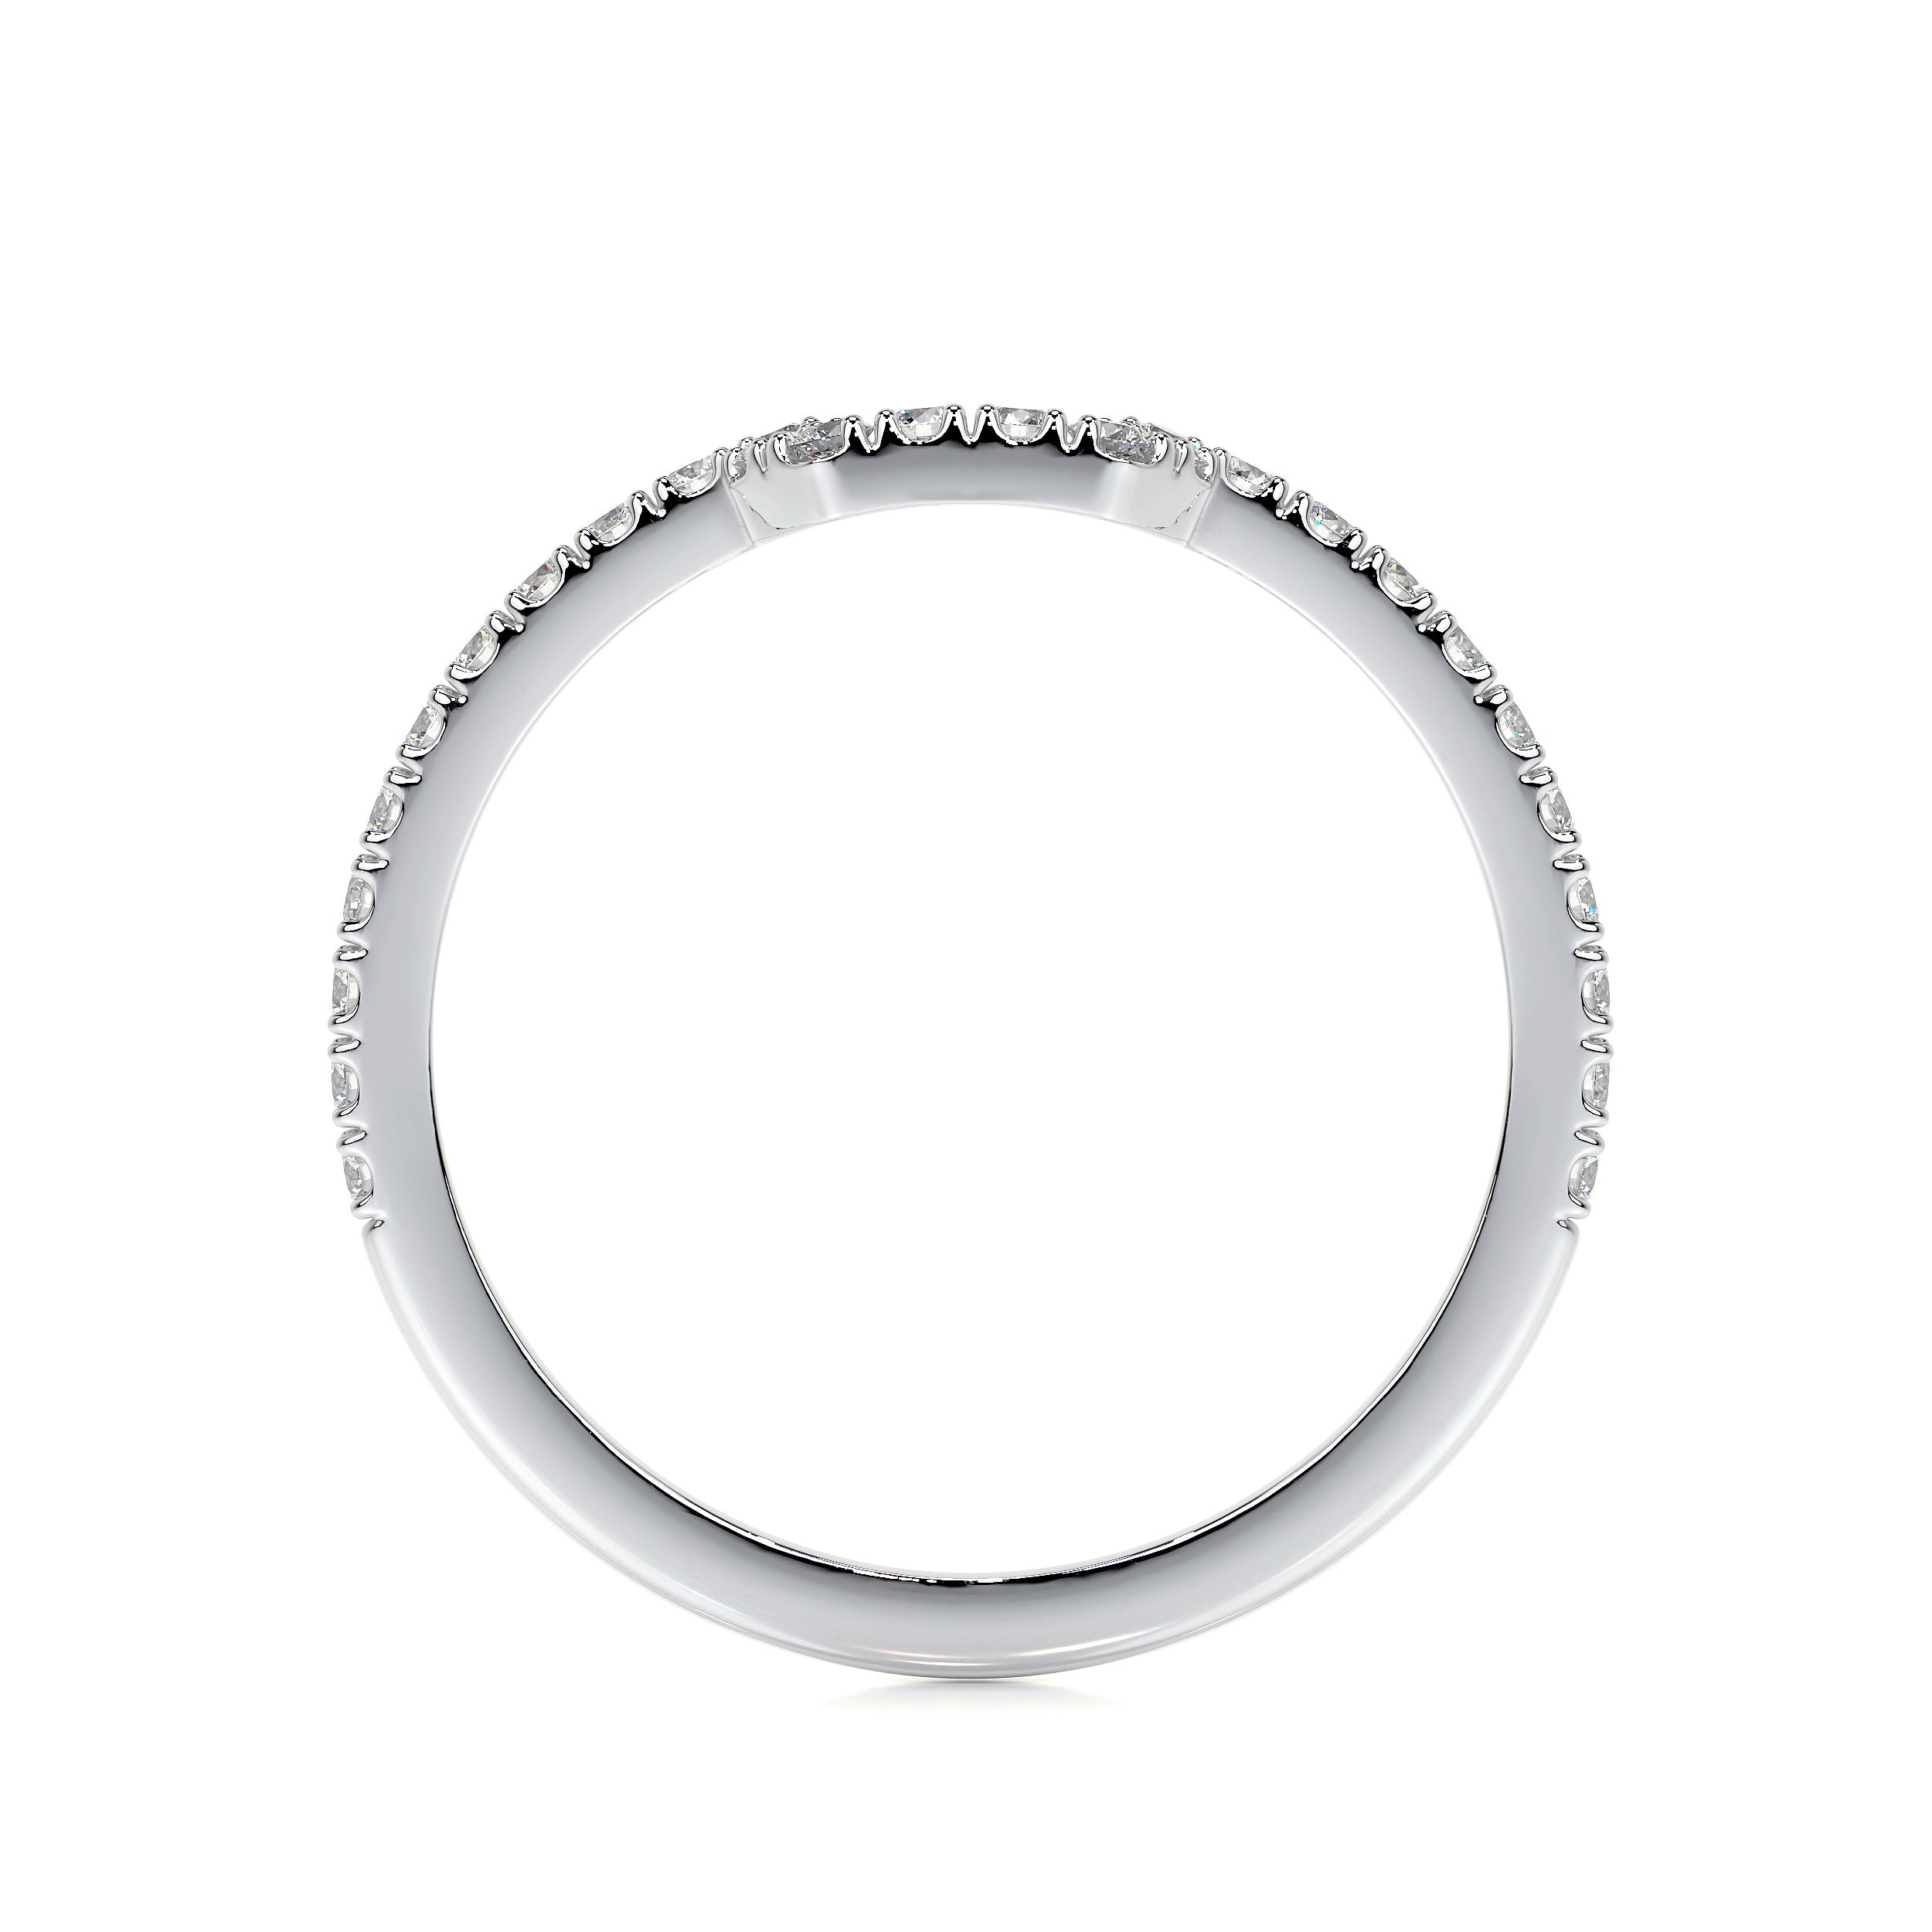 Luna Lab Grown Diamond Wedding Ring   (0.30 Carat) -18K White Gold